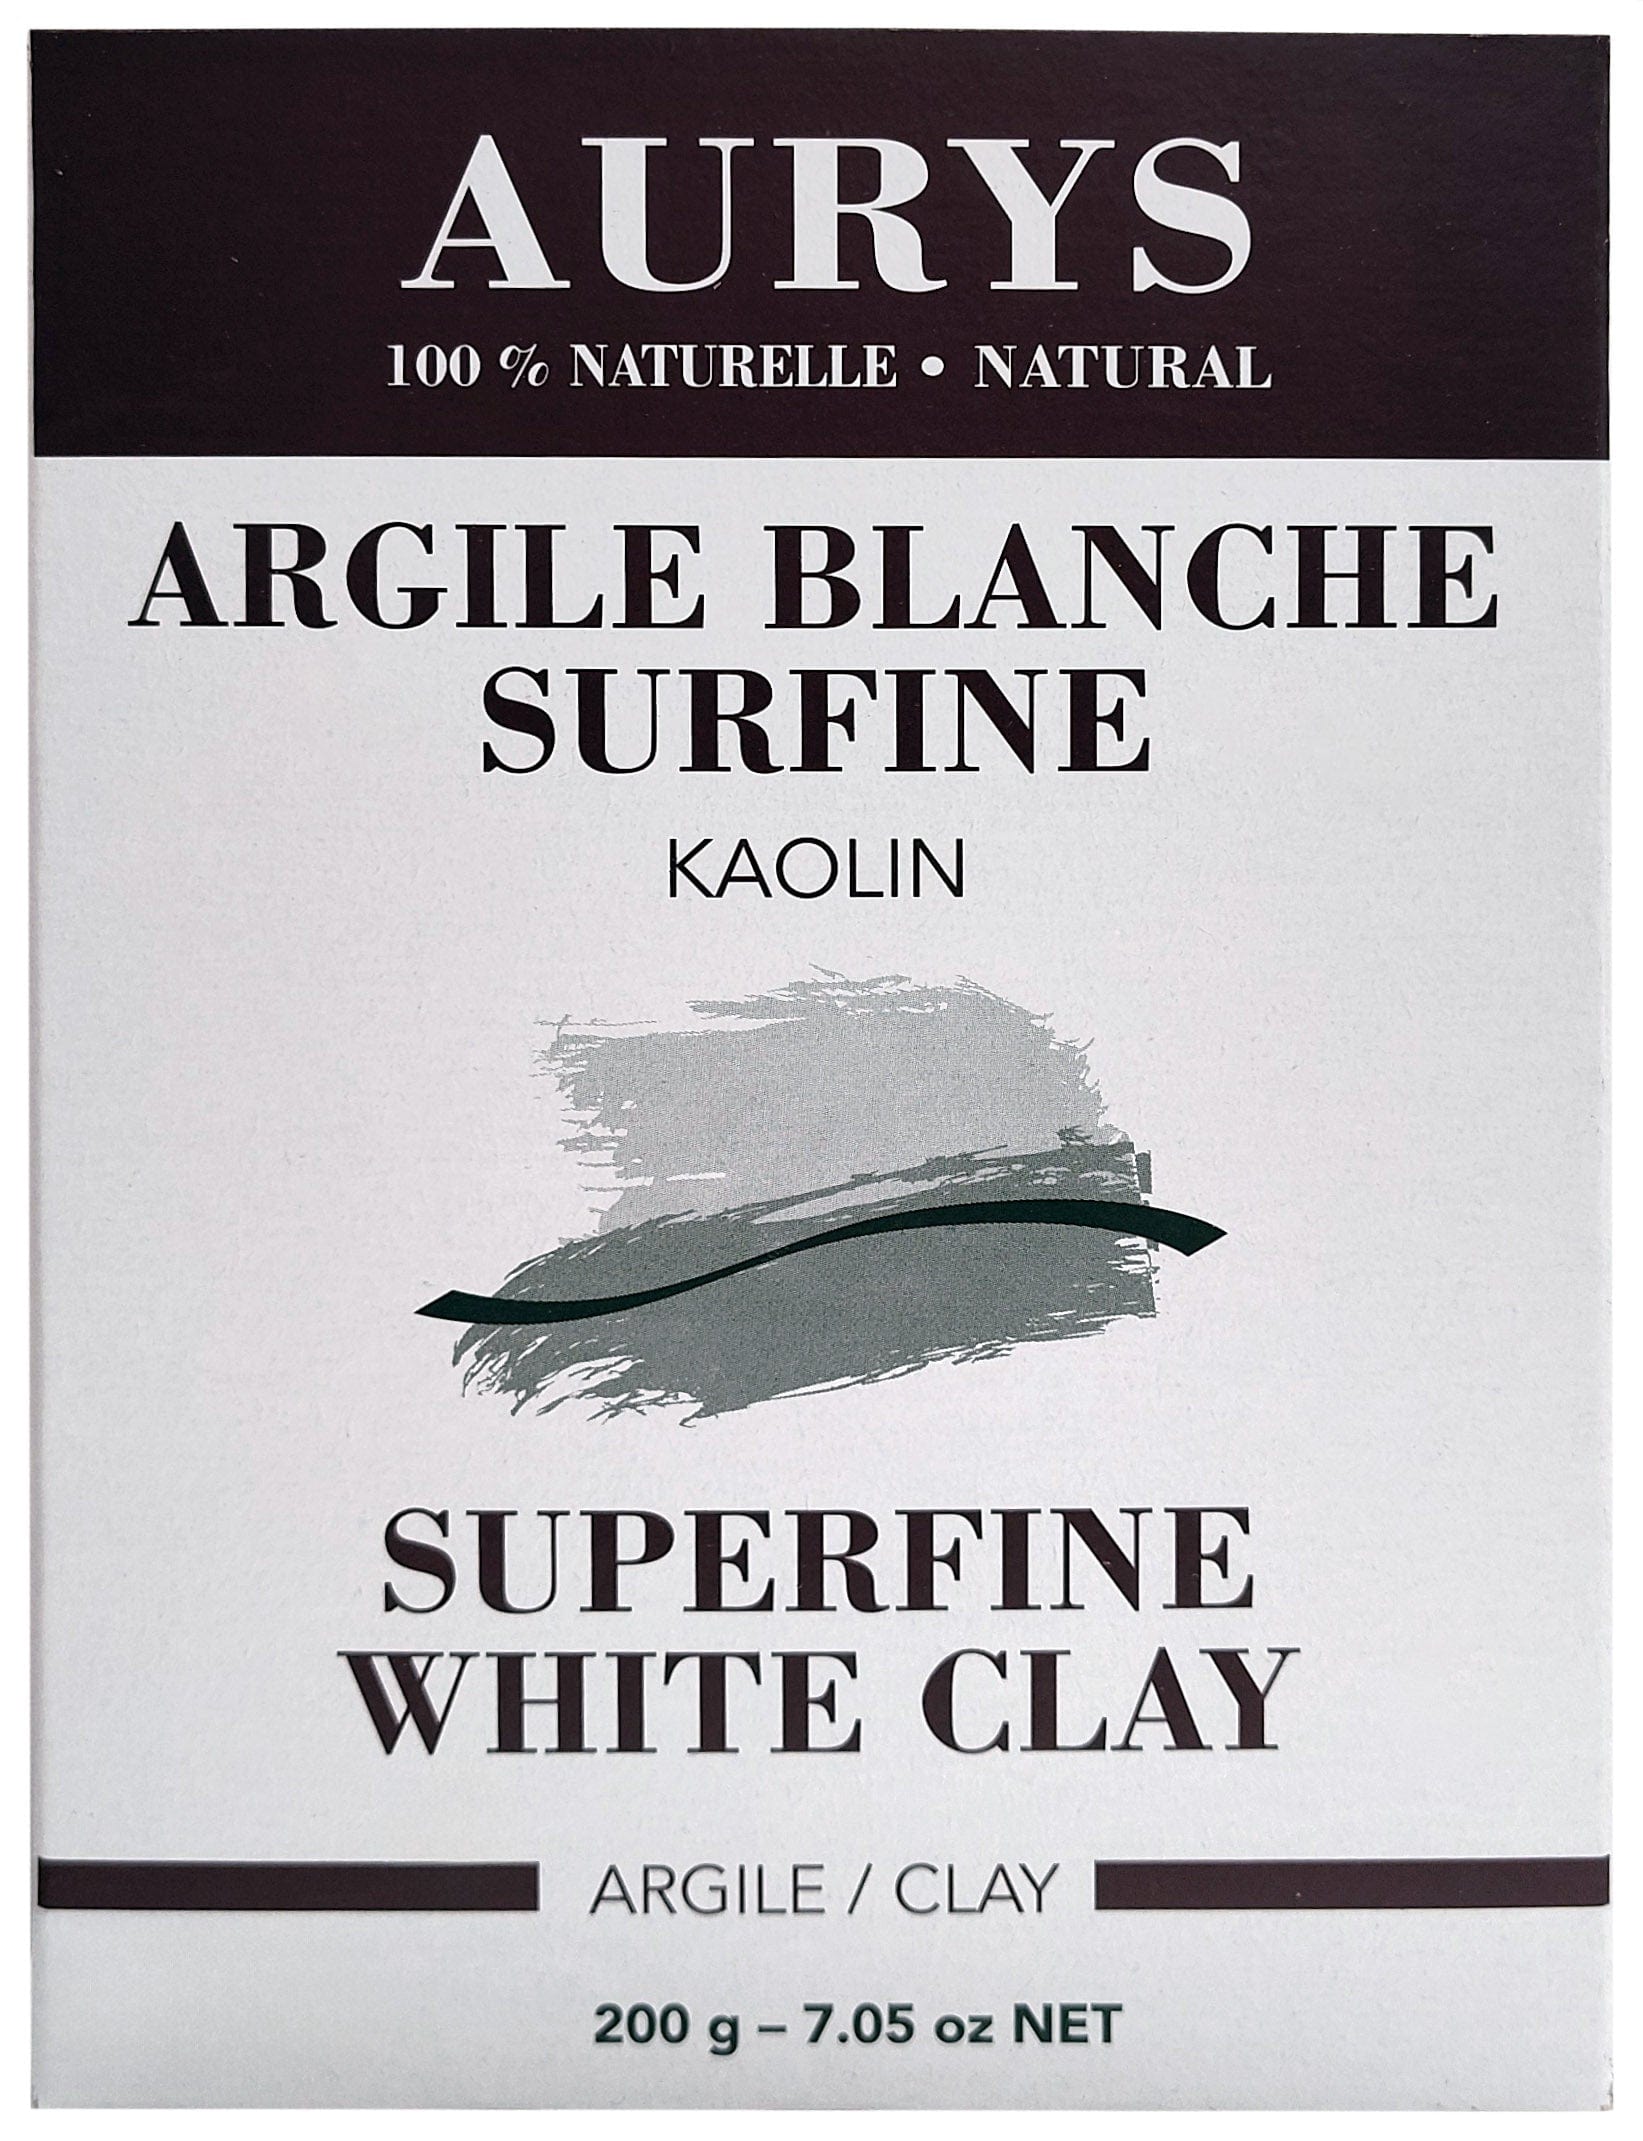 AURYS Soins & beauté Argile blanche surfine 200g